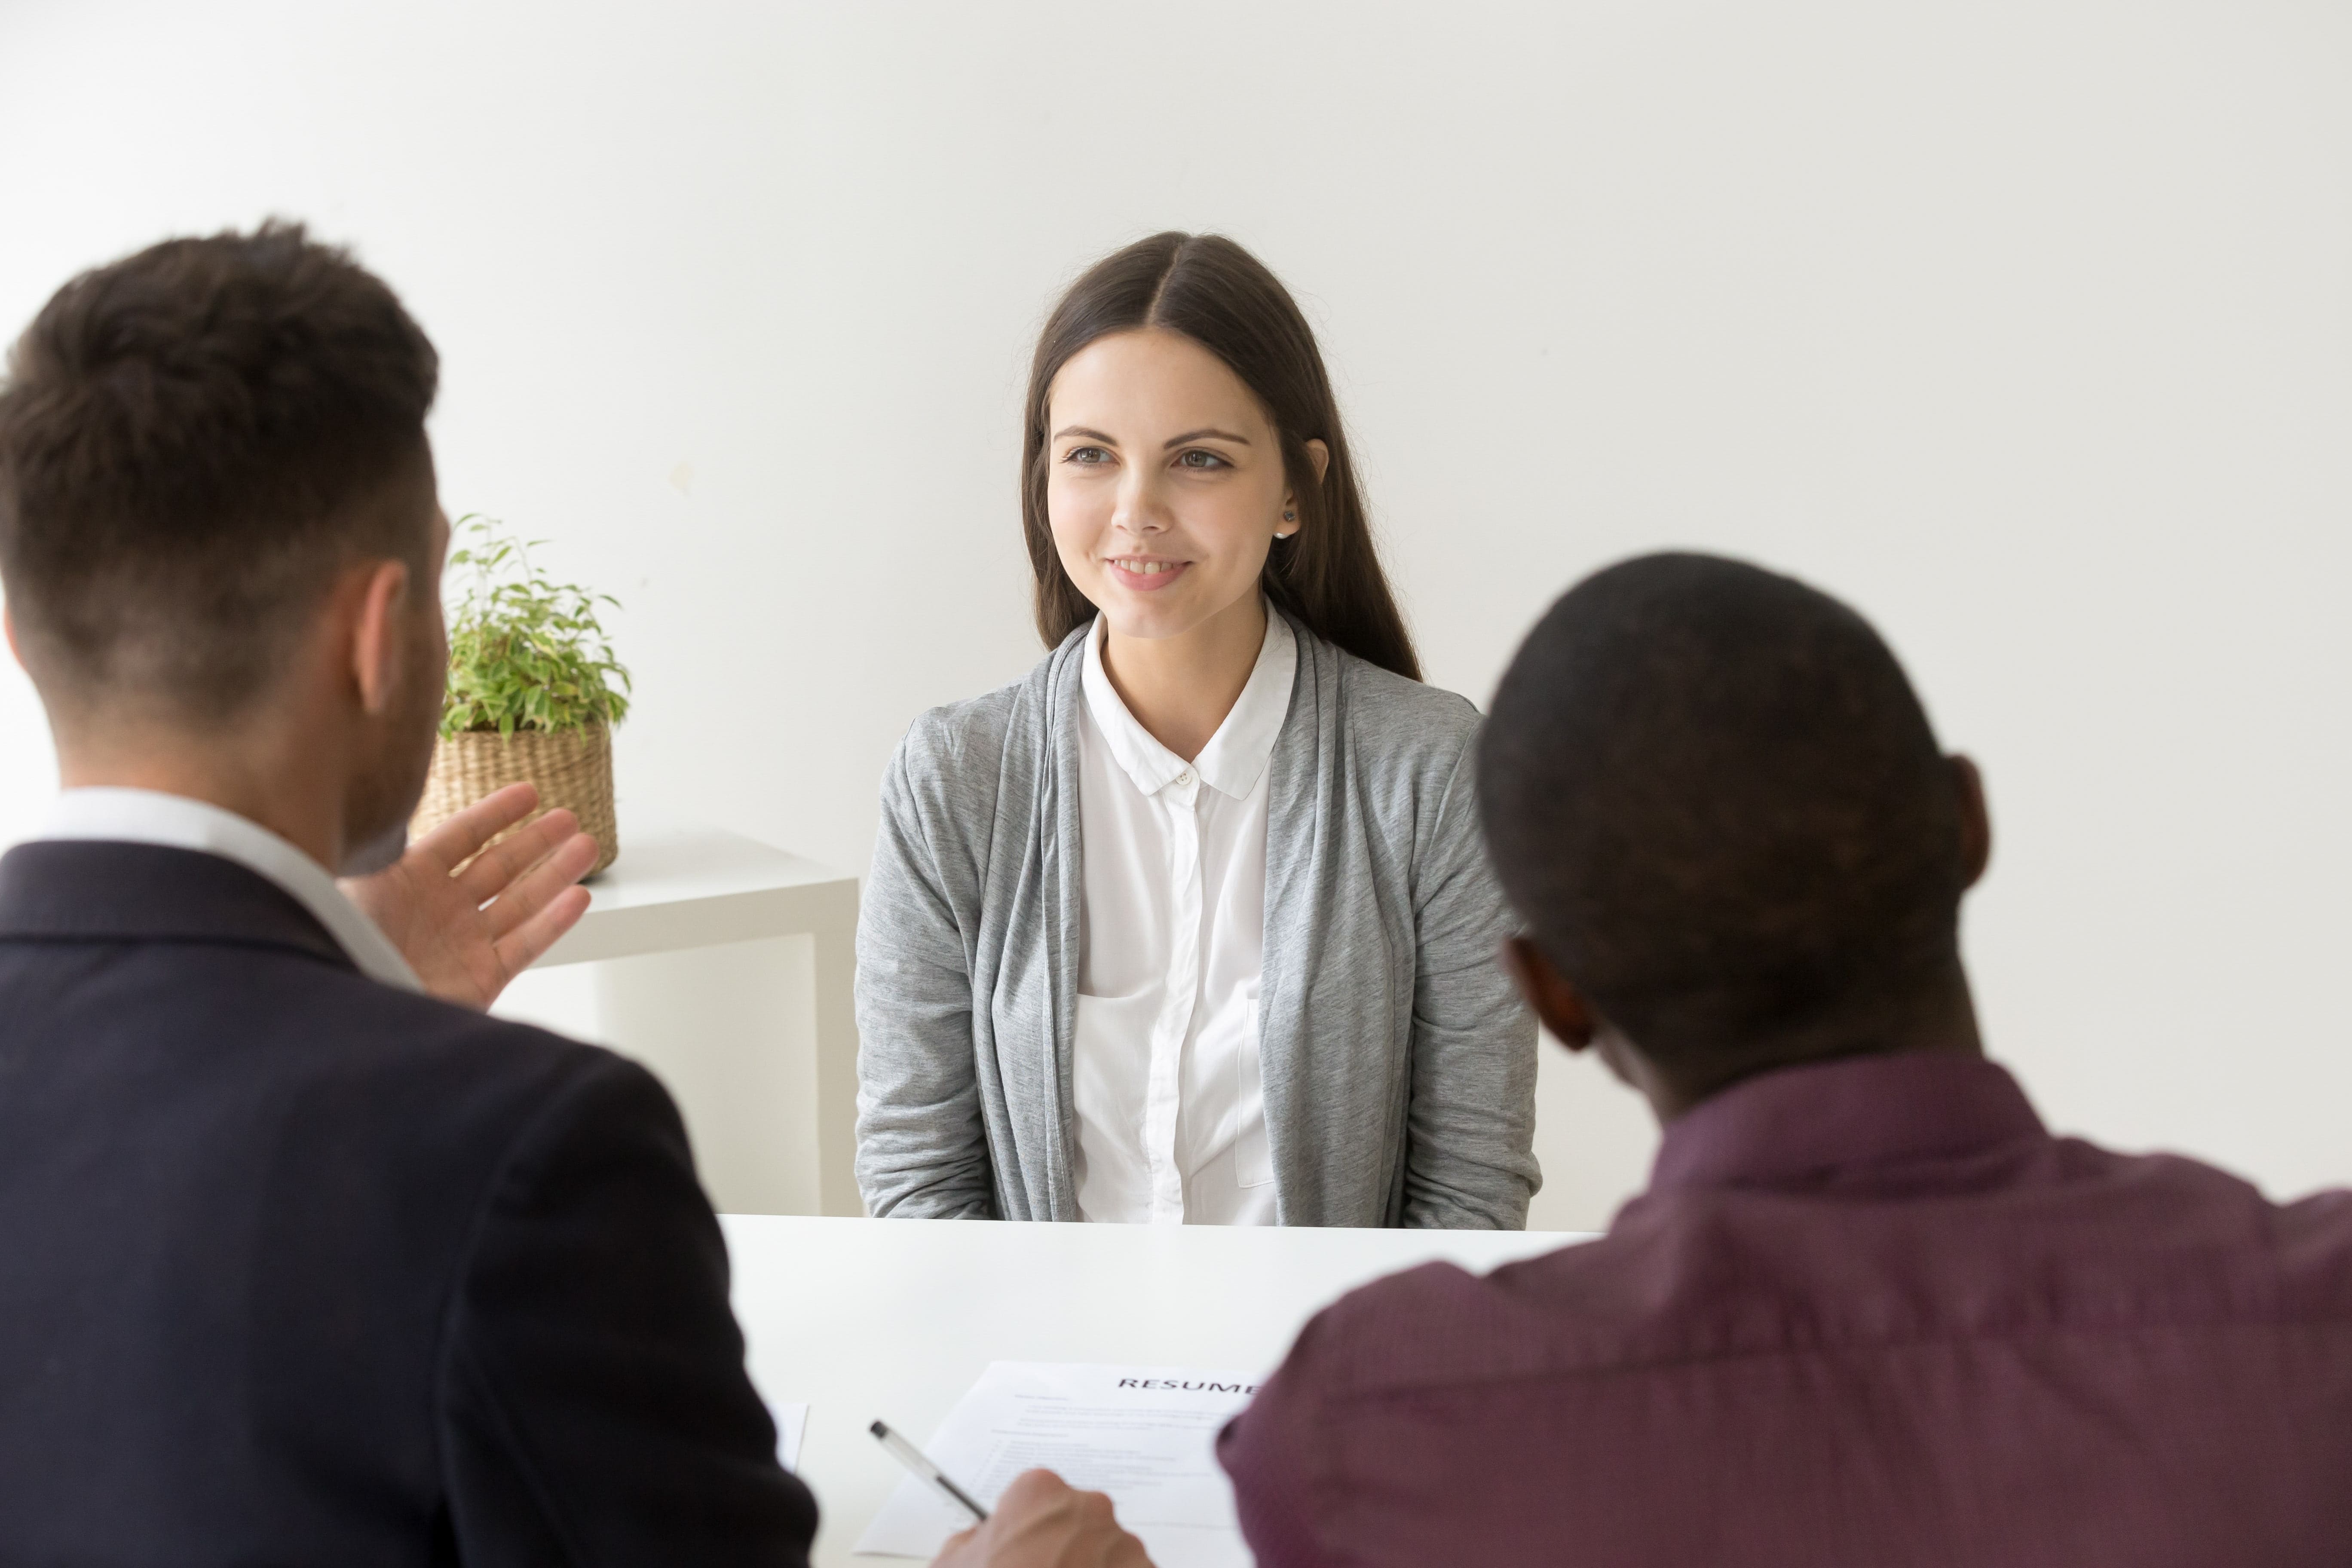 Les 10 questions les plus fréquentes pour préparer un entretien d'embauche avec les centre d'appels